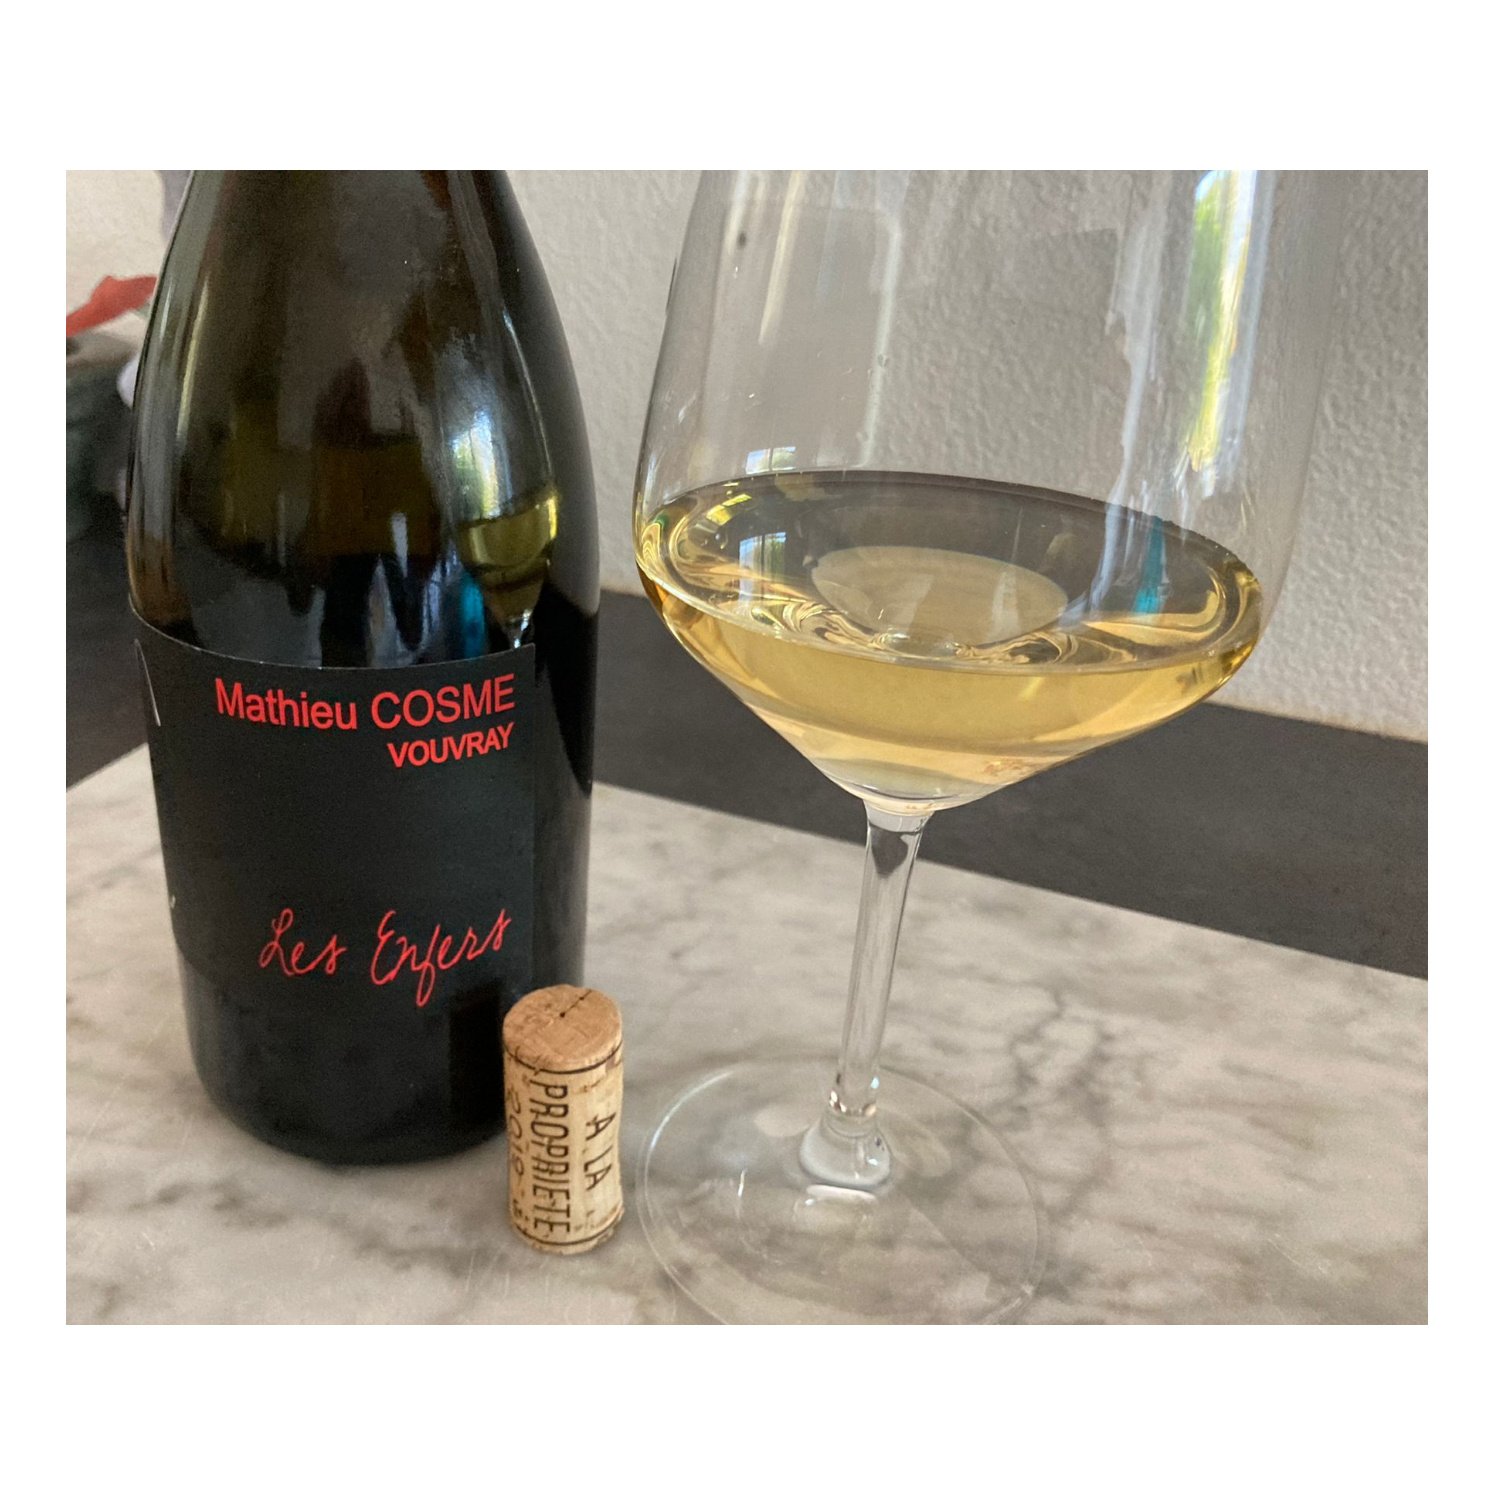 Enonauta/Degustazione di Vino #158 - Les Enfers  2019 - Mathieu Cosme  | Mathieu Cosme a Noizay, paese nella zona sud est di Vouvray, è alla quinta generazione di vignaioli